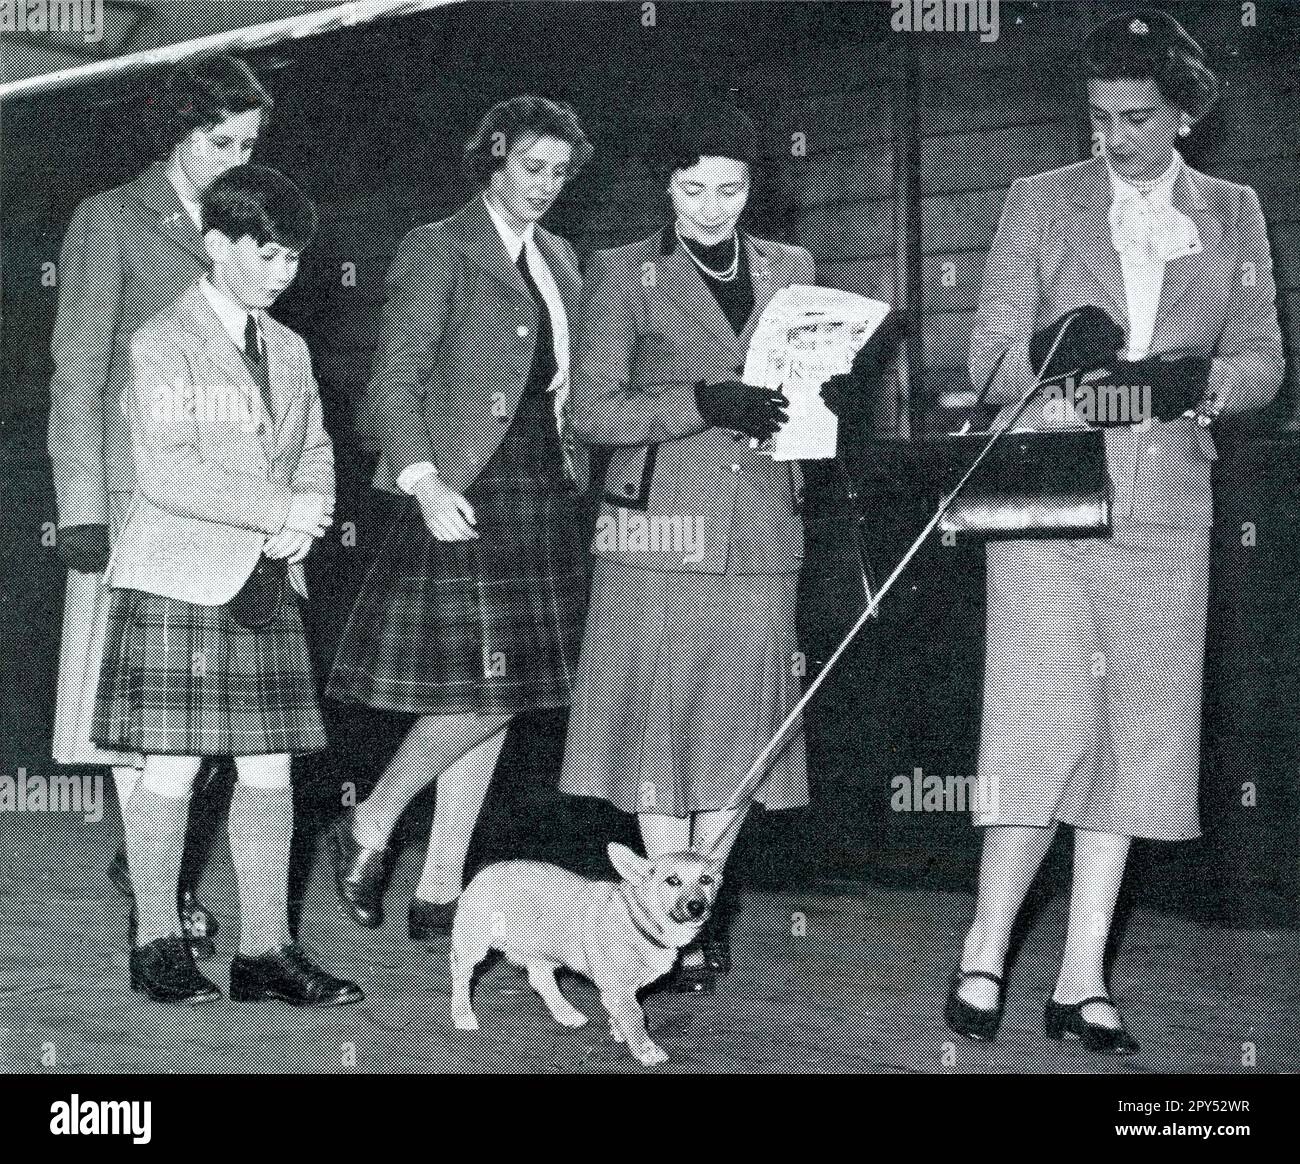 Photographie de presse de la Duchesse de Kent avec son chien Corgi à la gare d'Aberdeen joint Station sur le point de voyager pour des vacances à Deeside le 5th septembre 1951. Elle est accompagnée de ses enfants, le prince Michael de Kent et la princesse Alexandra de Kent, tous deux portant un kilt. Écosse, Royaume-Uni Banque D'Images